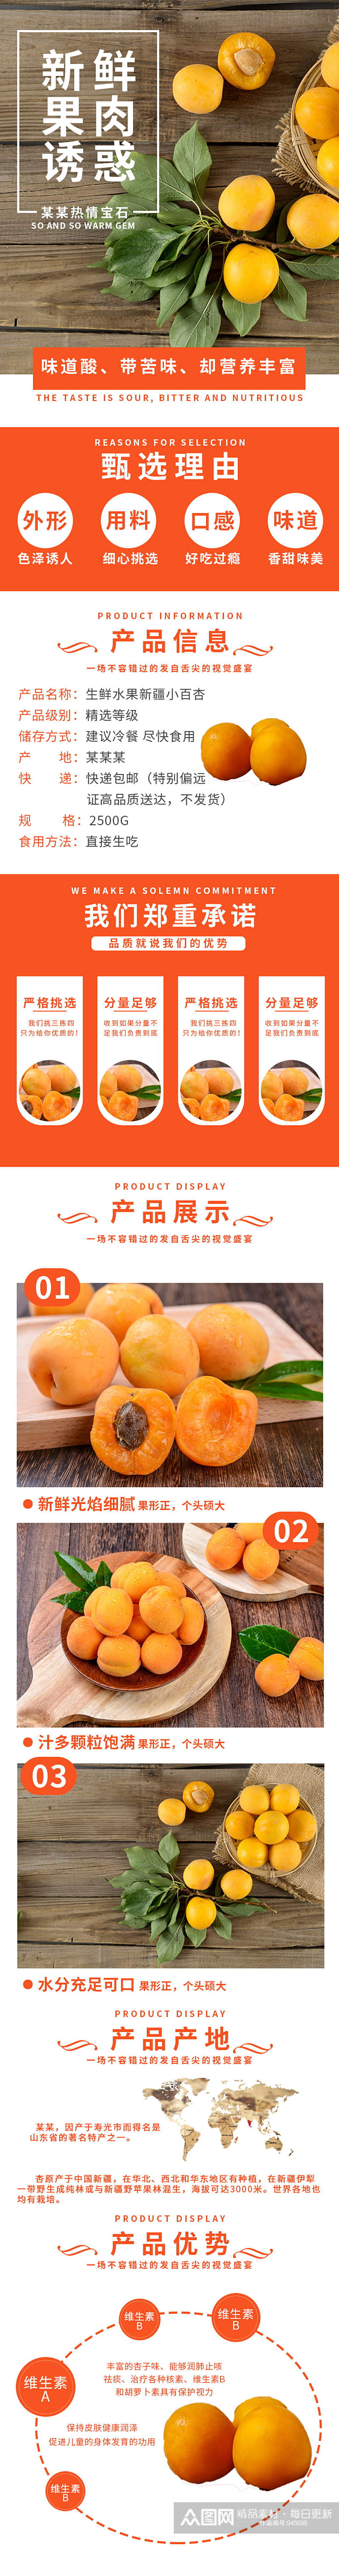 橙色生鲜水果新疆小百杏详情页素材